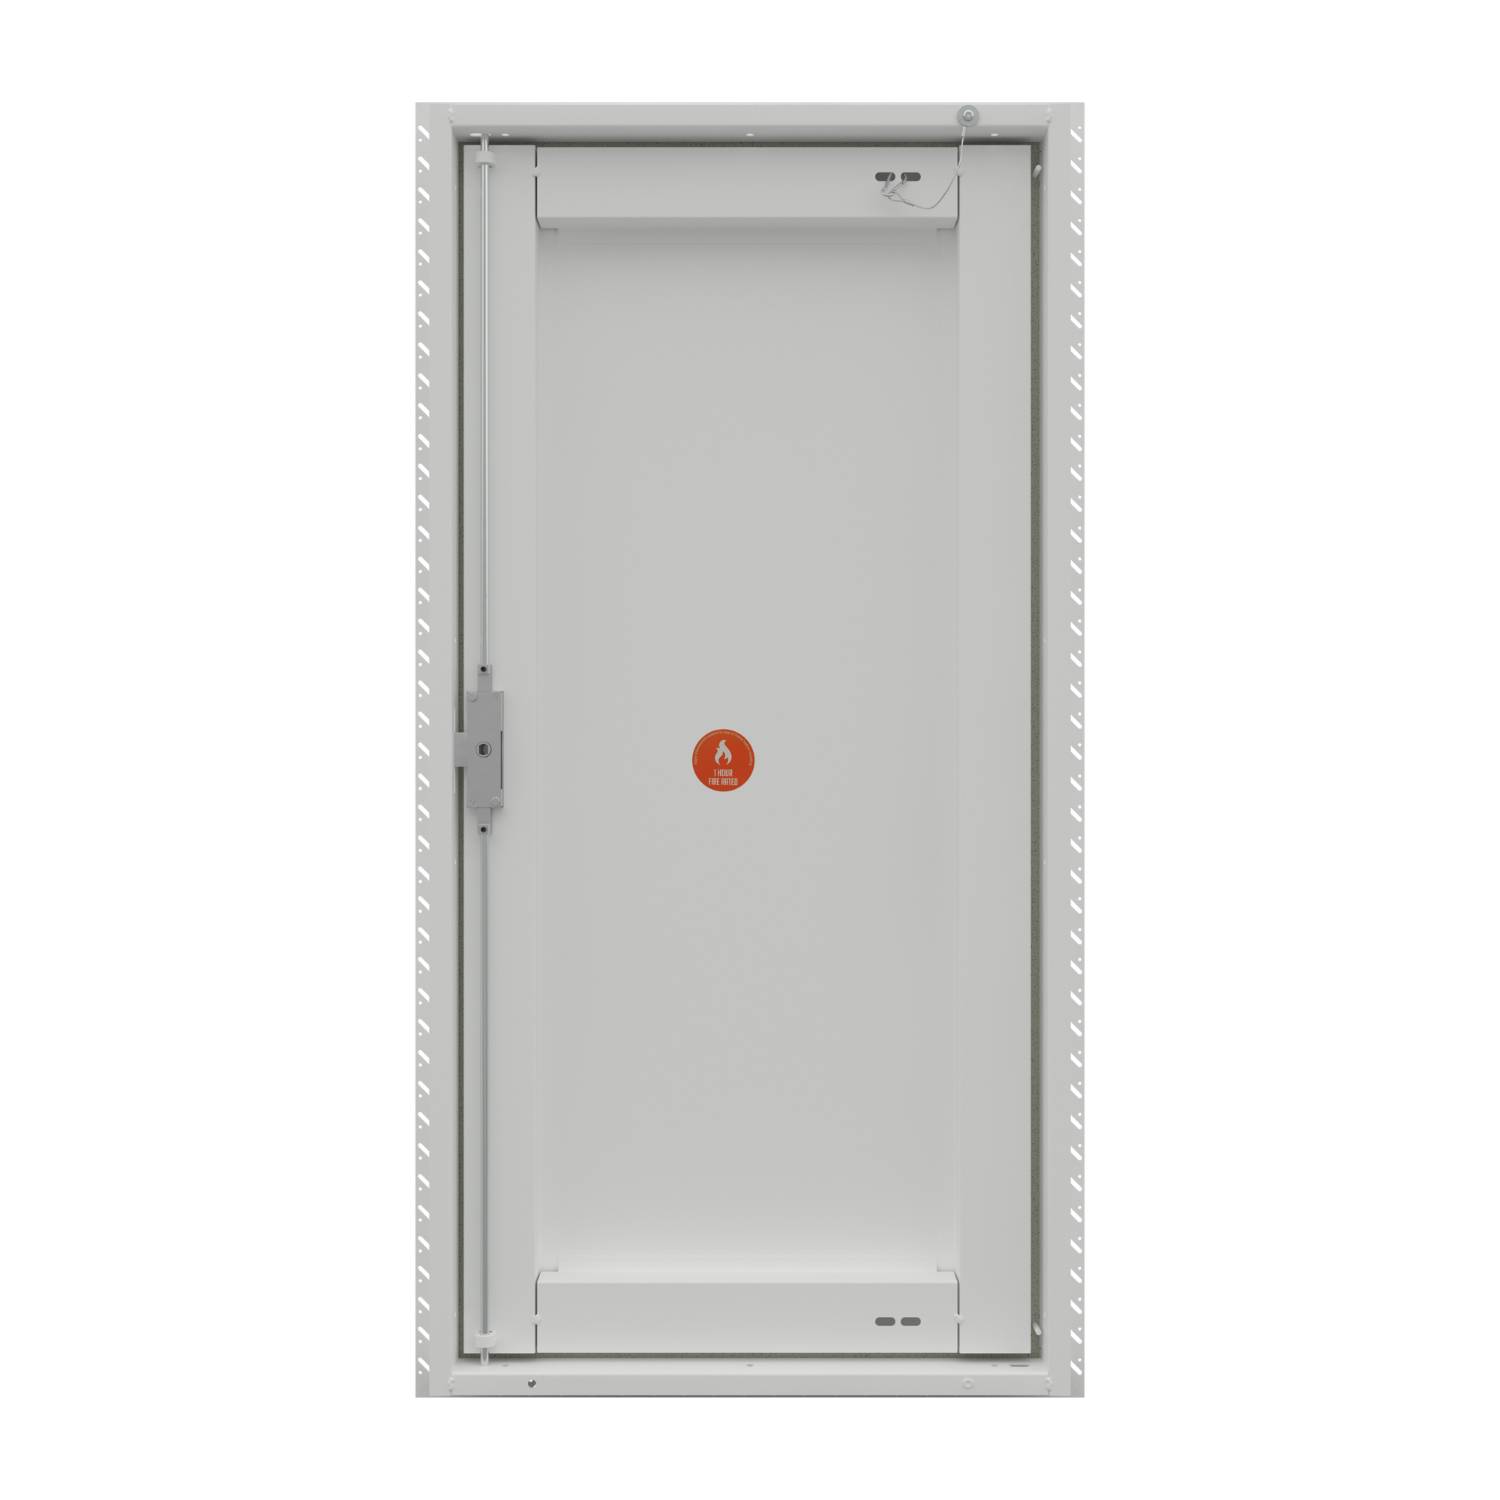 Metal Riser Door - Picture Frame - R57 Range - Access Panel, Wall Riser Door